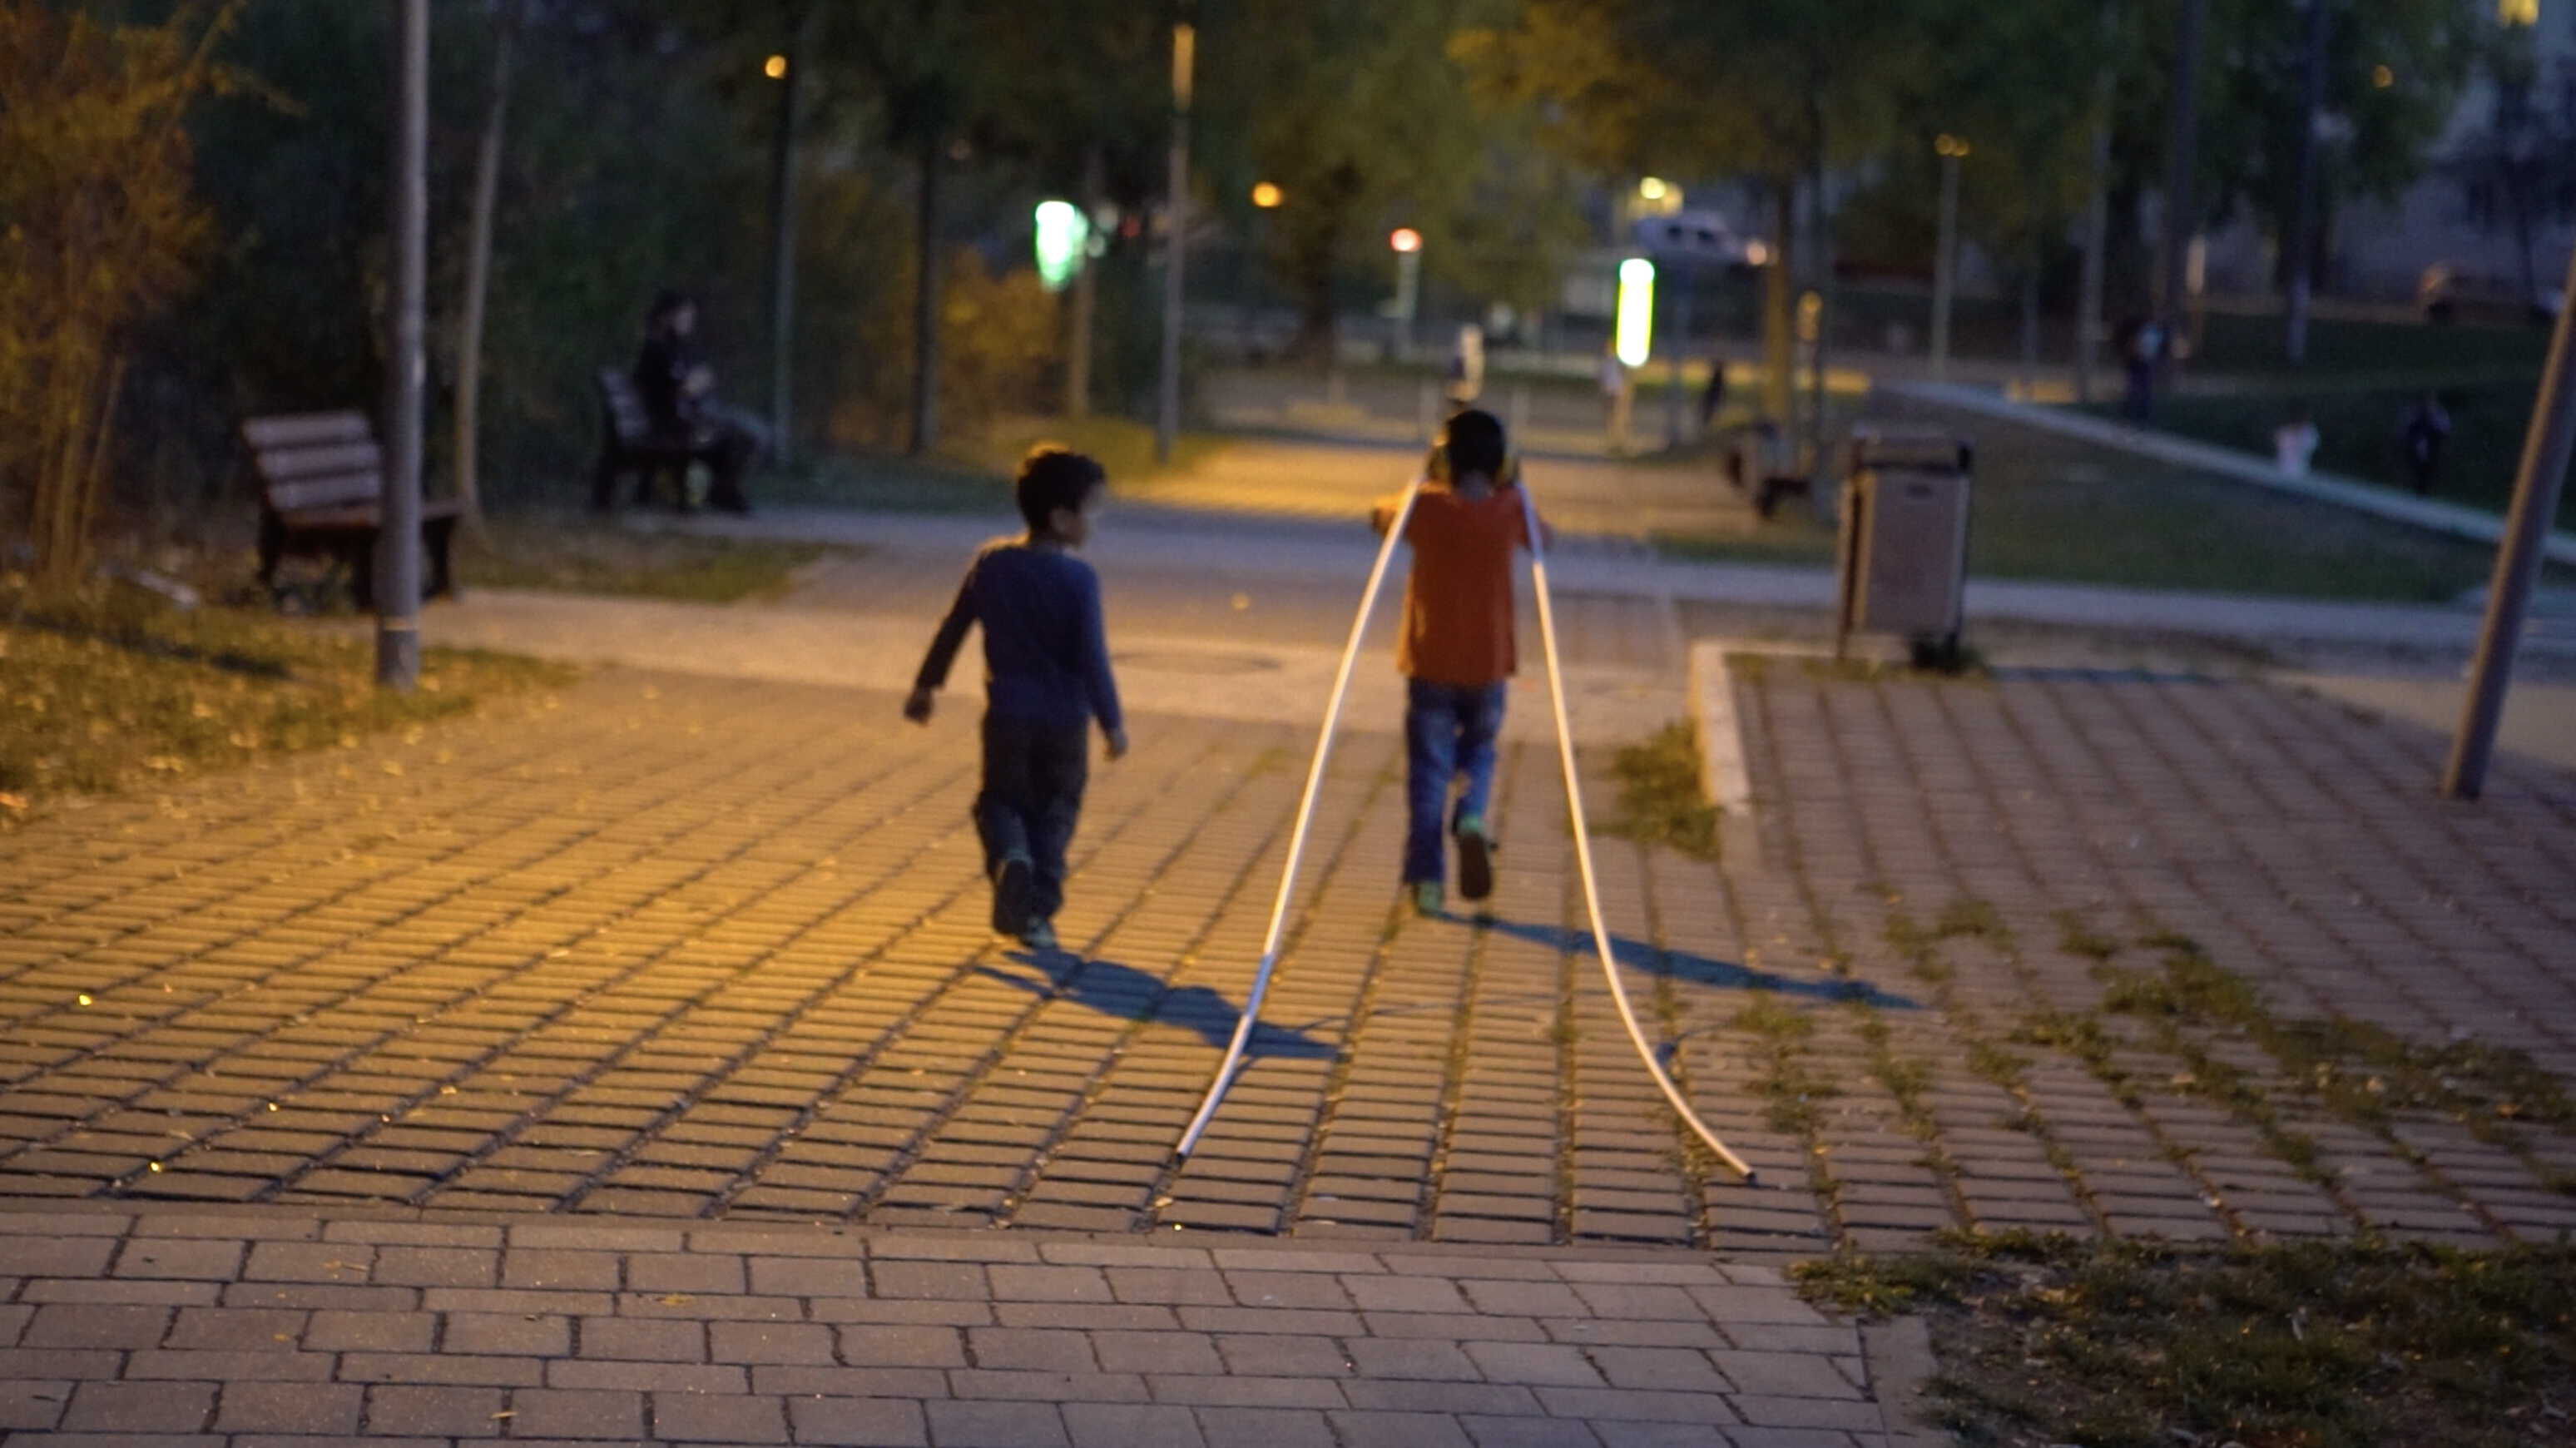 children entering the playground